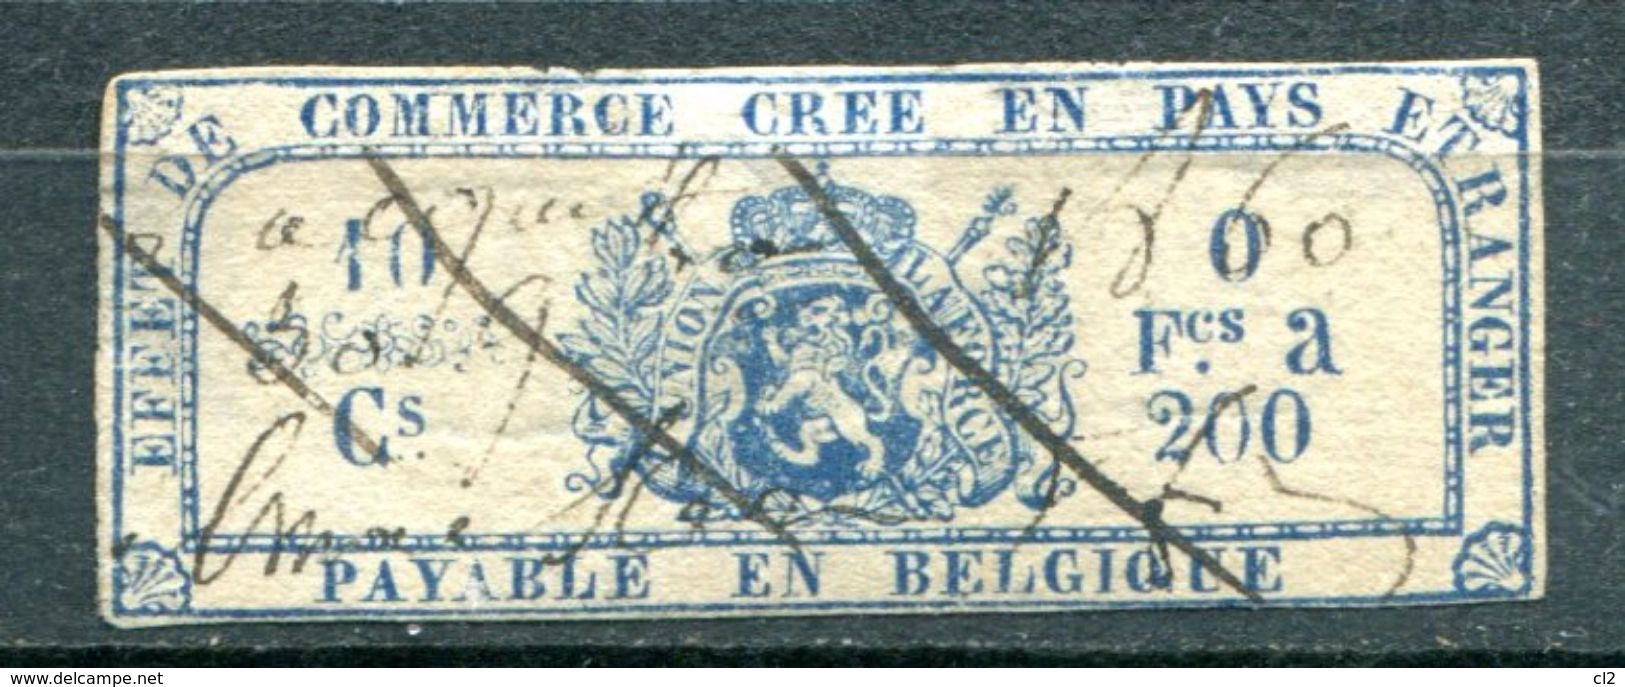 BELGIQUE - Fiscaux - Effet De Commerce Annulé En 1860 - Stamps